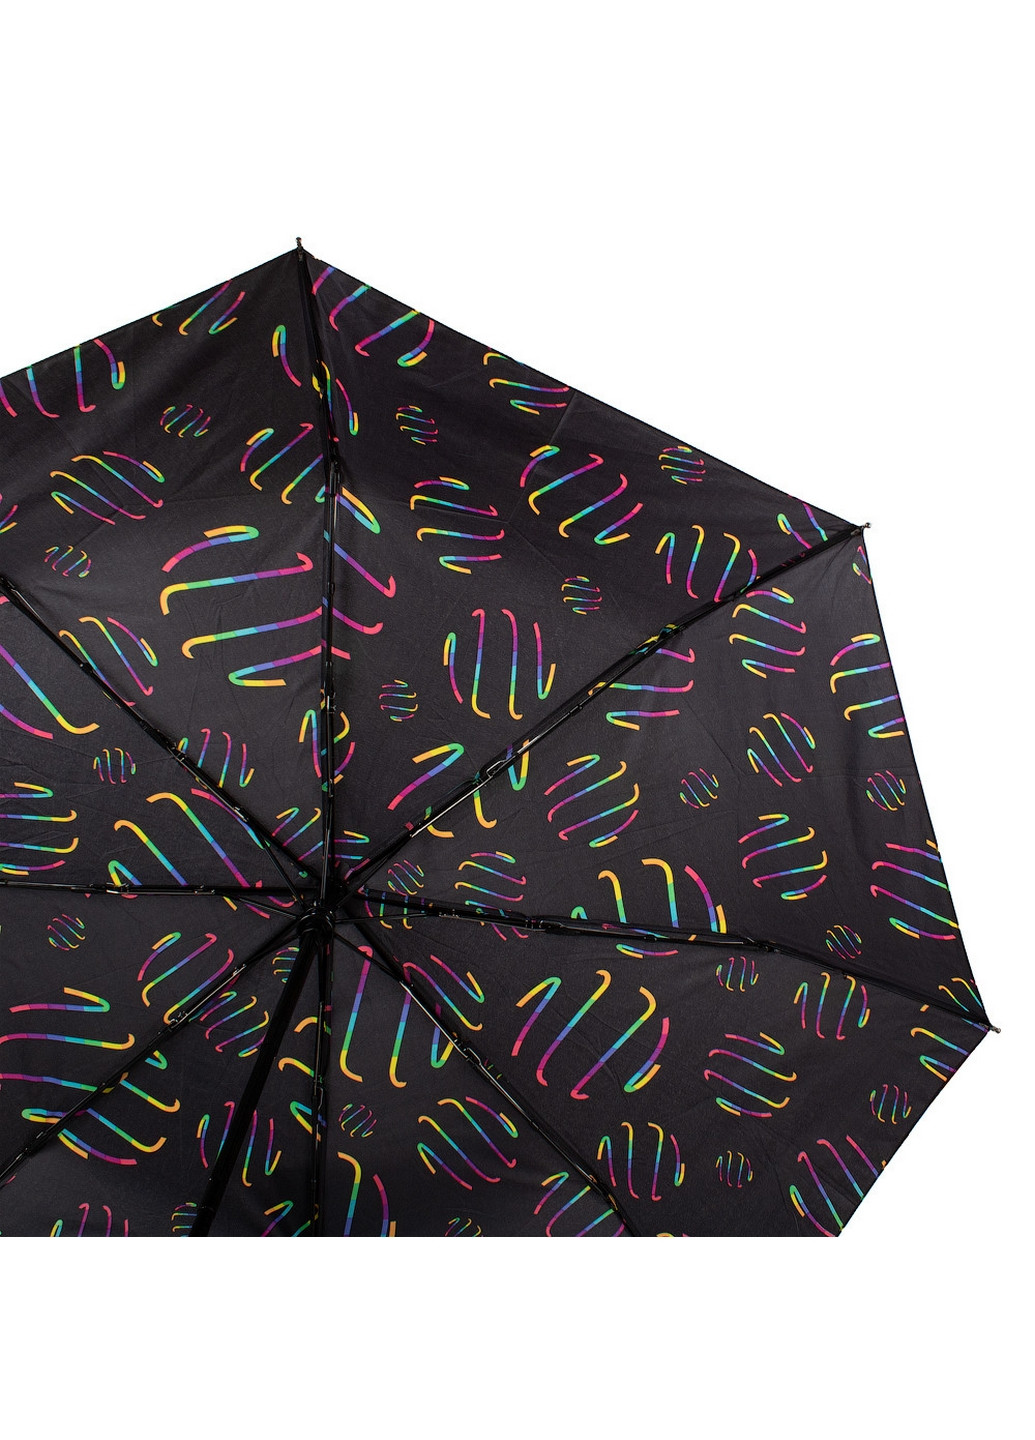 Женский складной зонт автомат 98 см Happy Rain (260330284)